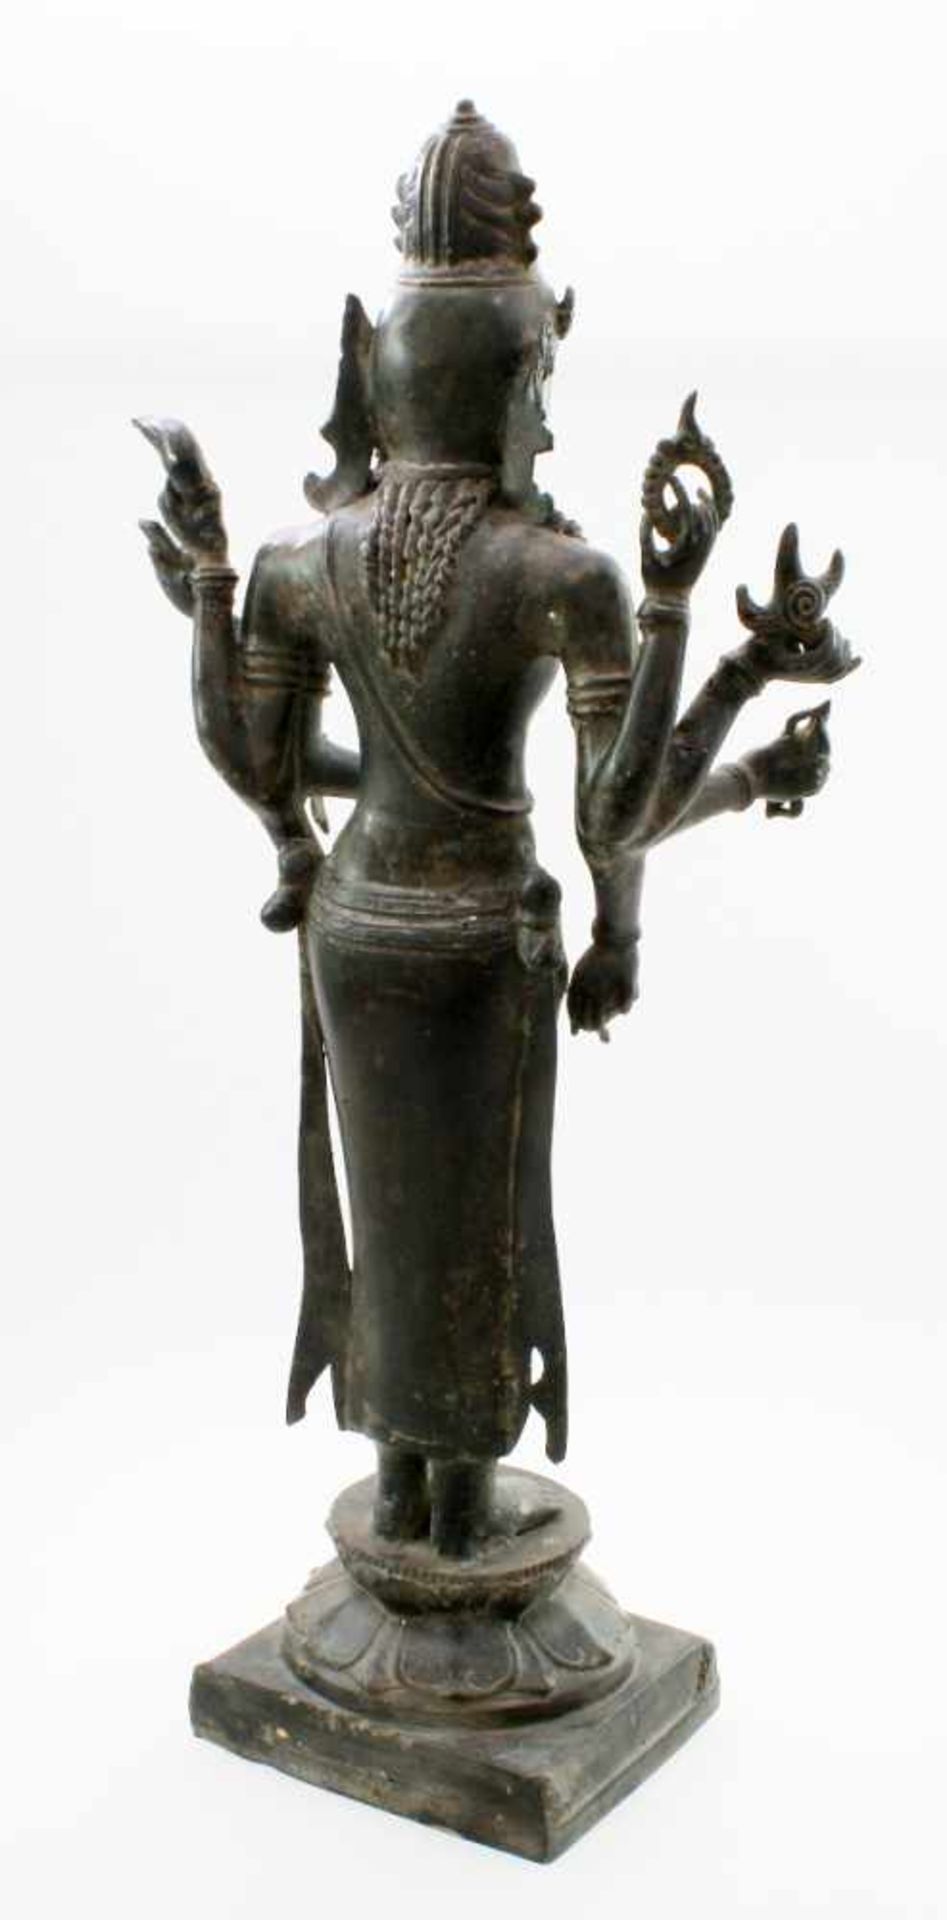 Tibet / Nepal - Bronzeskulptur "Avalokiteshvara" 19. Jahrhundert Gegossen in der verlorenen Form. - Bild 3 aus 7